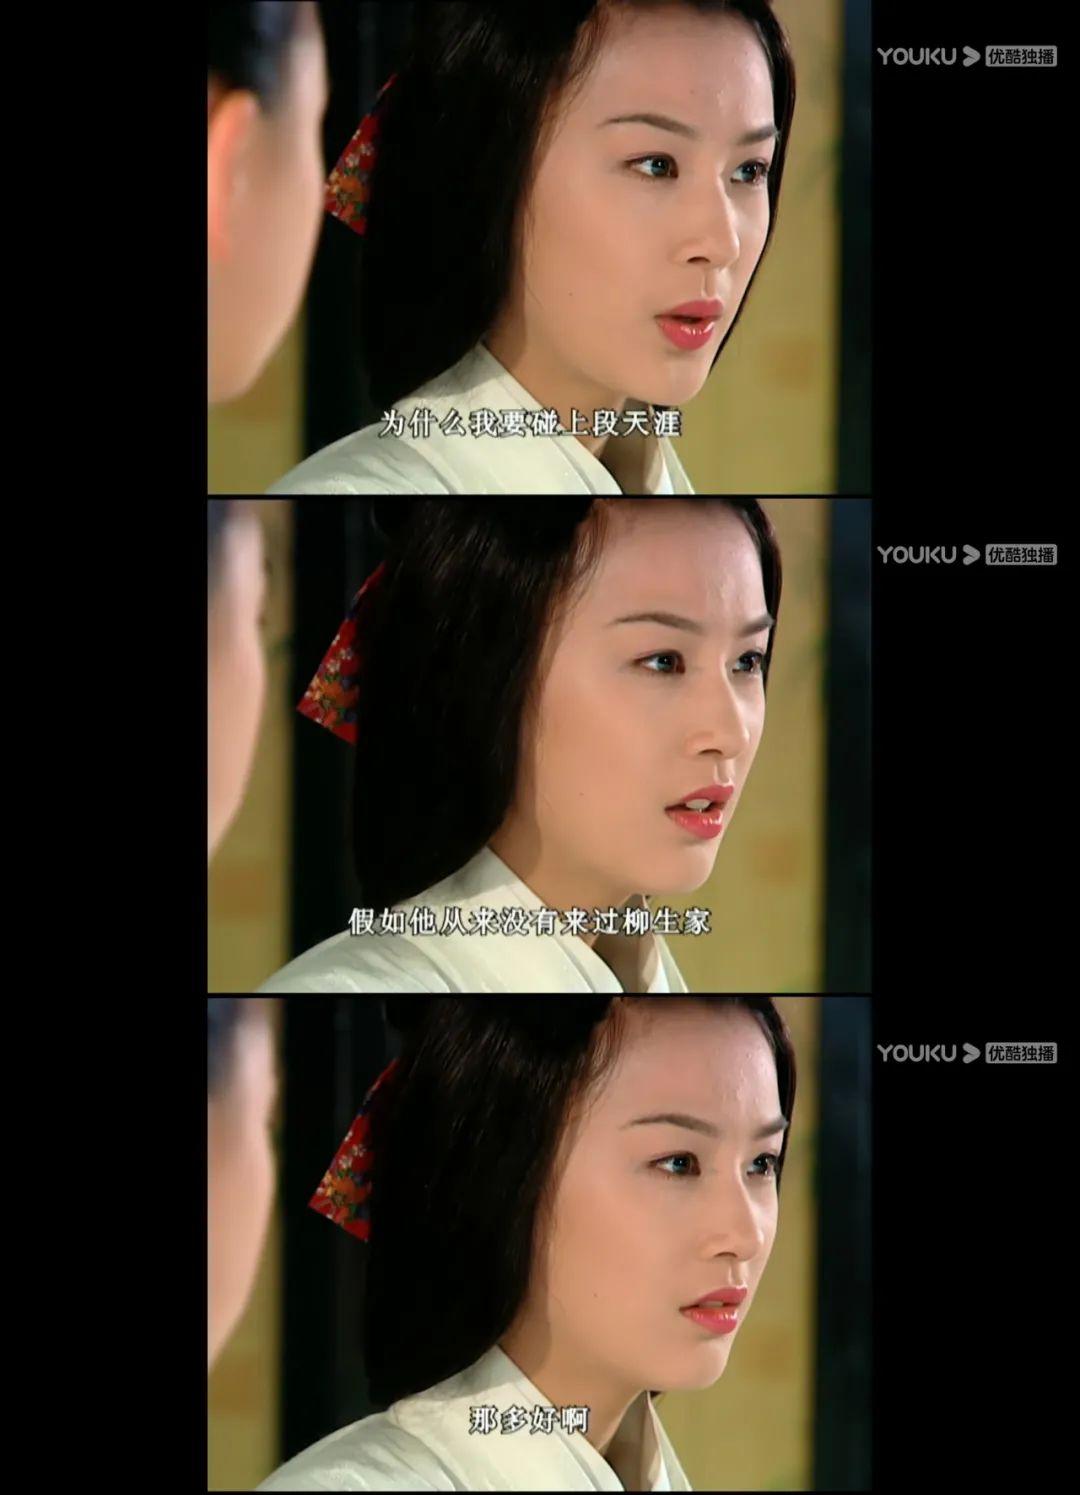 天下第一:雪姬,黄圣依最经典角色,为爱背叛家族,为爱殒命